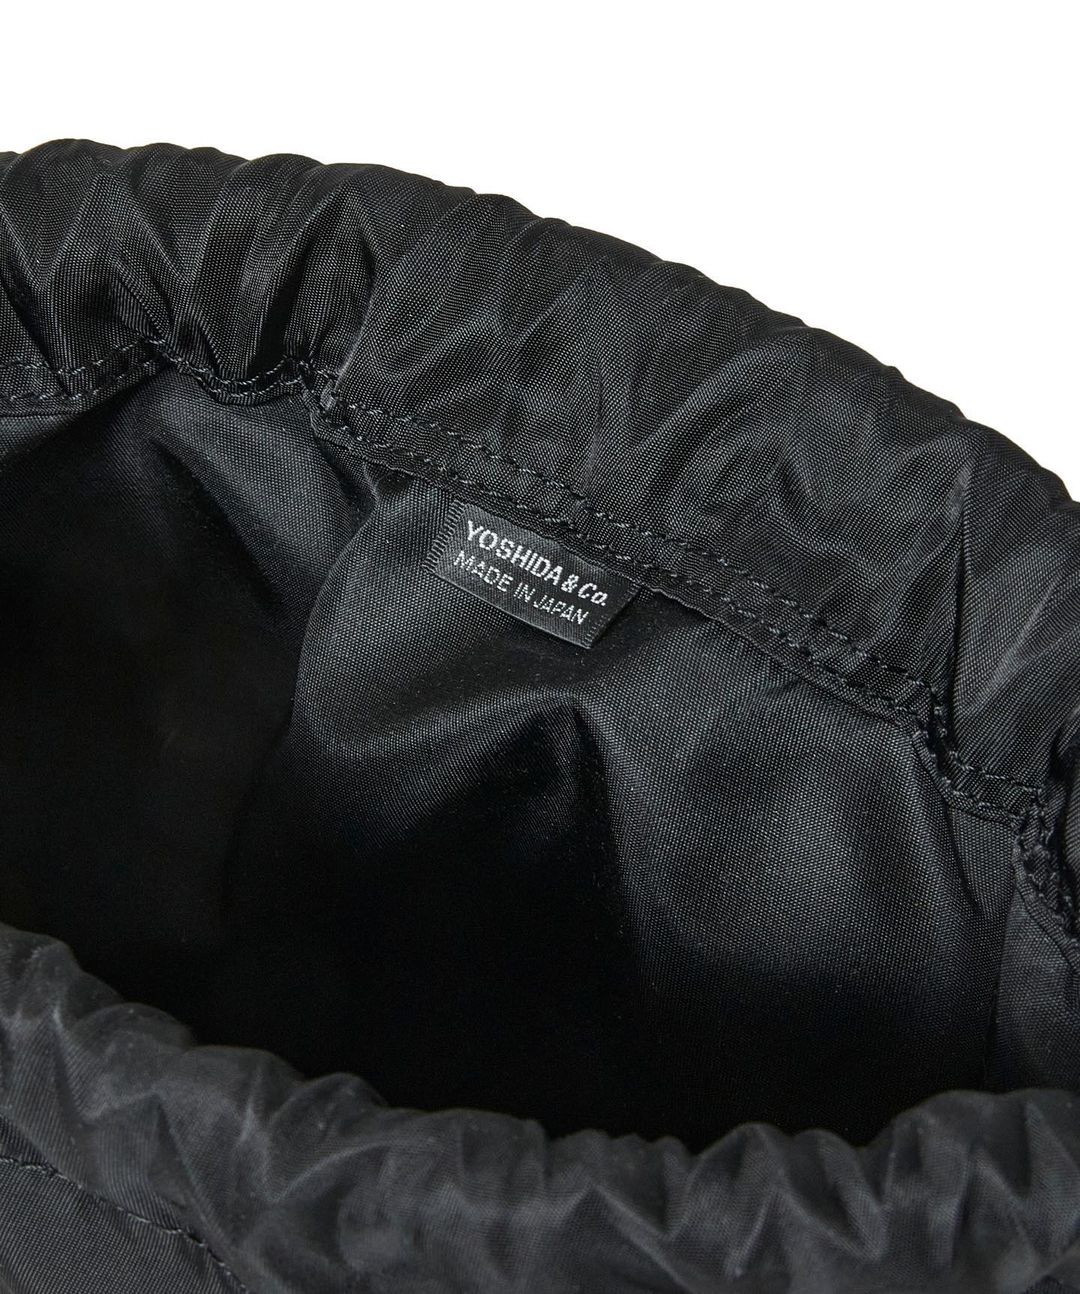 N.HOOLYWOOD COMPILE × PORTER 巾着型のミニバッグ2型が11/3 発売 (エヌハリウッド ポーター)